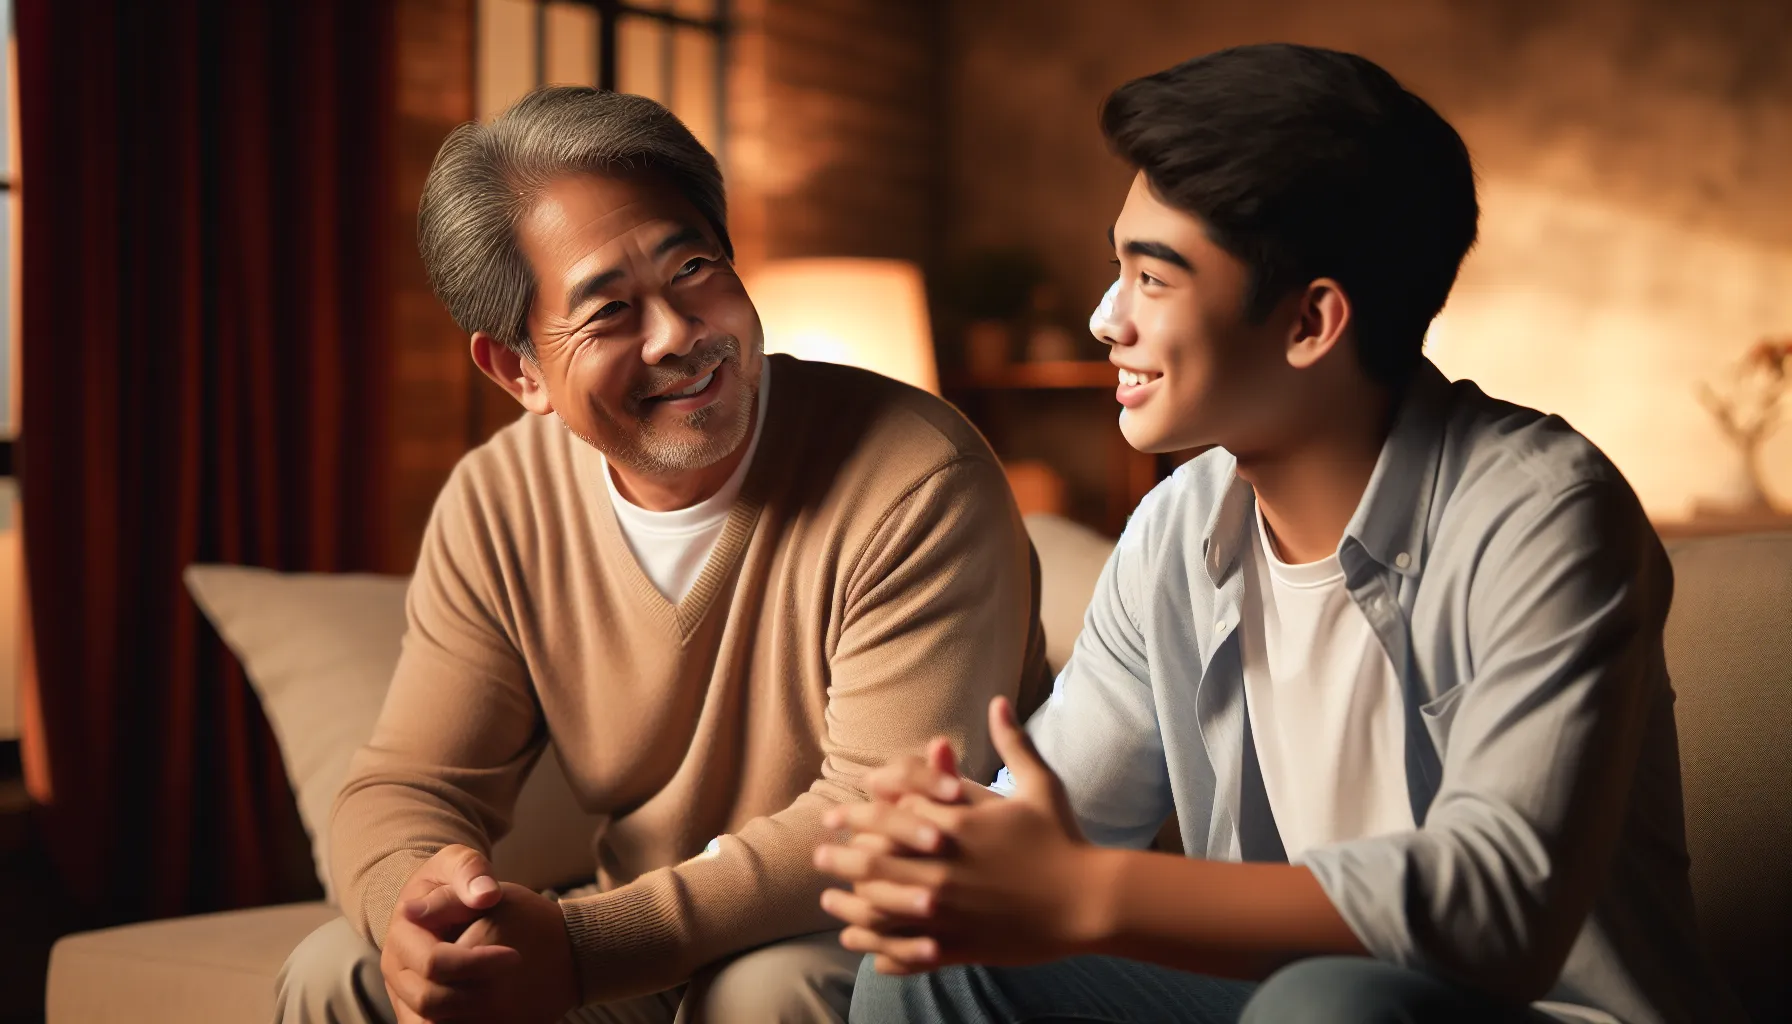 Imagen ilustrativa de un padre y un hijo compartiendo una conversación amorosa